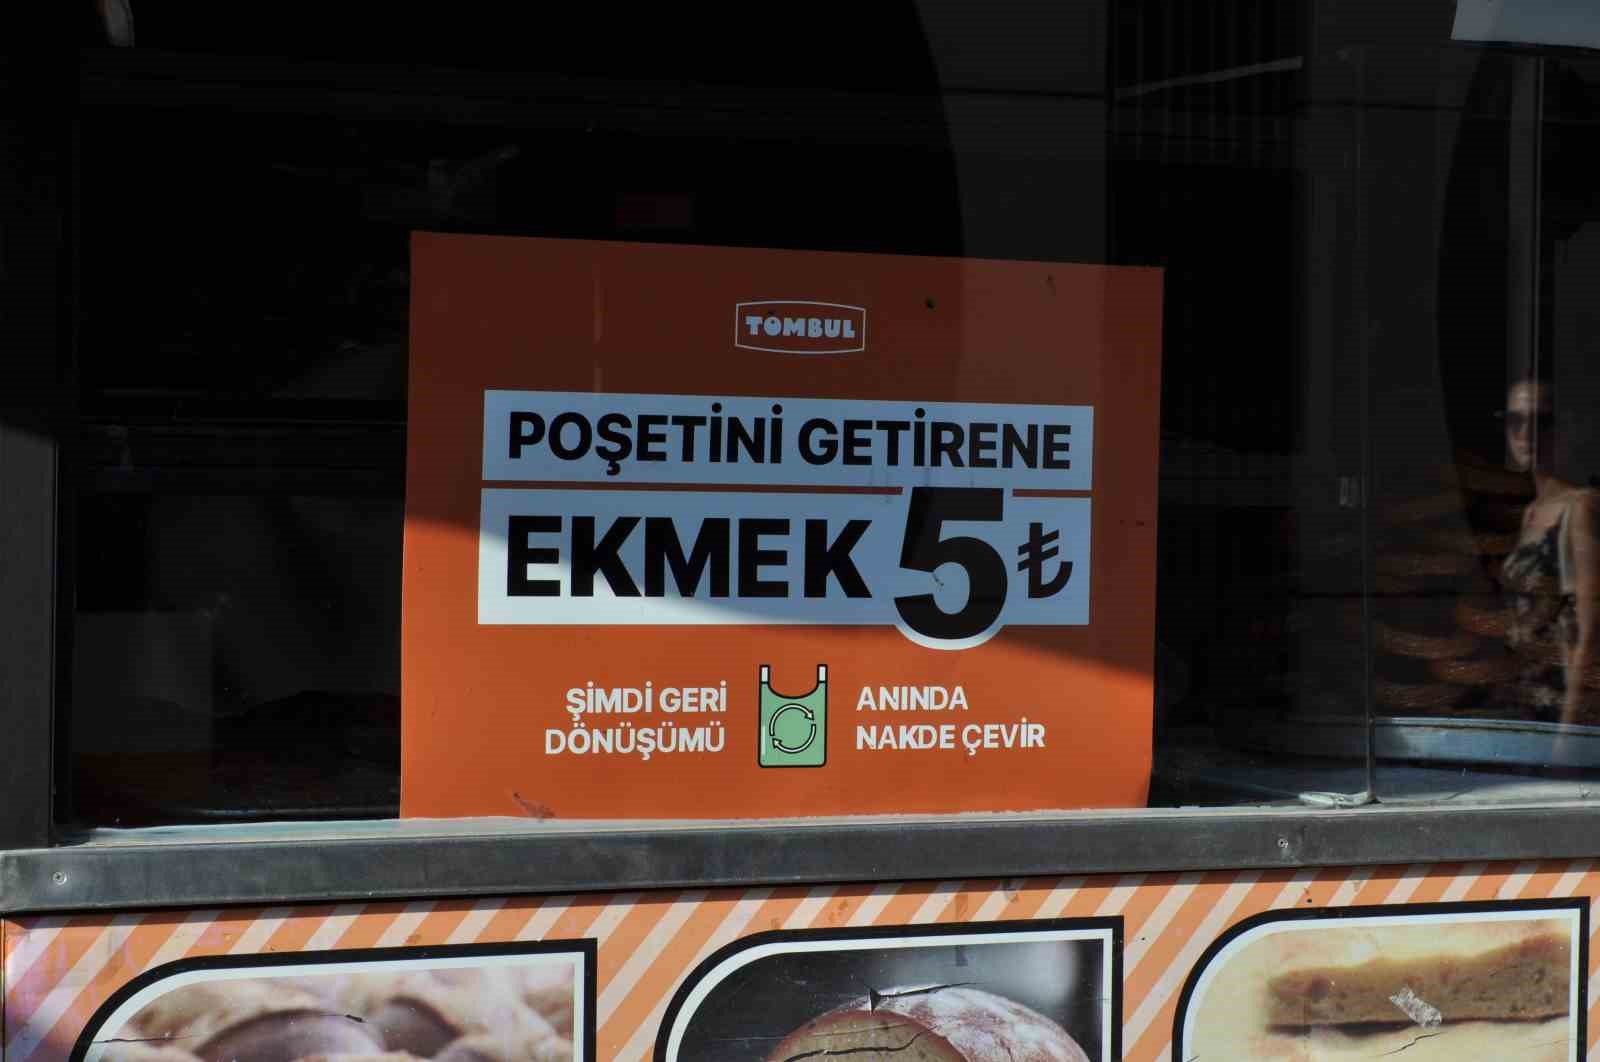 Ekmeği ucuza satan fırından Büyükşehir Belediyesi açıklamasına cevap